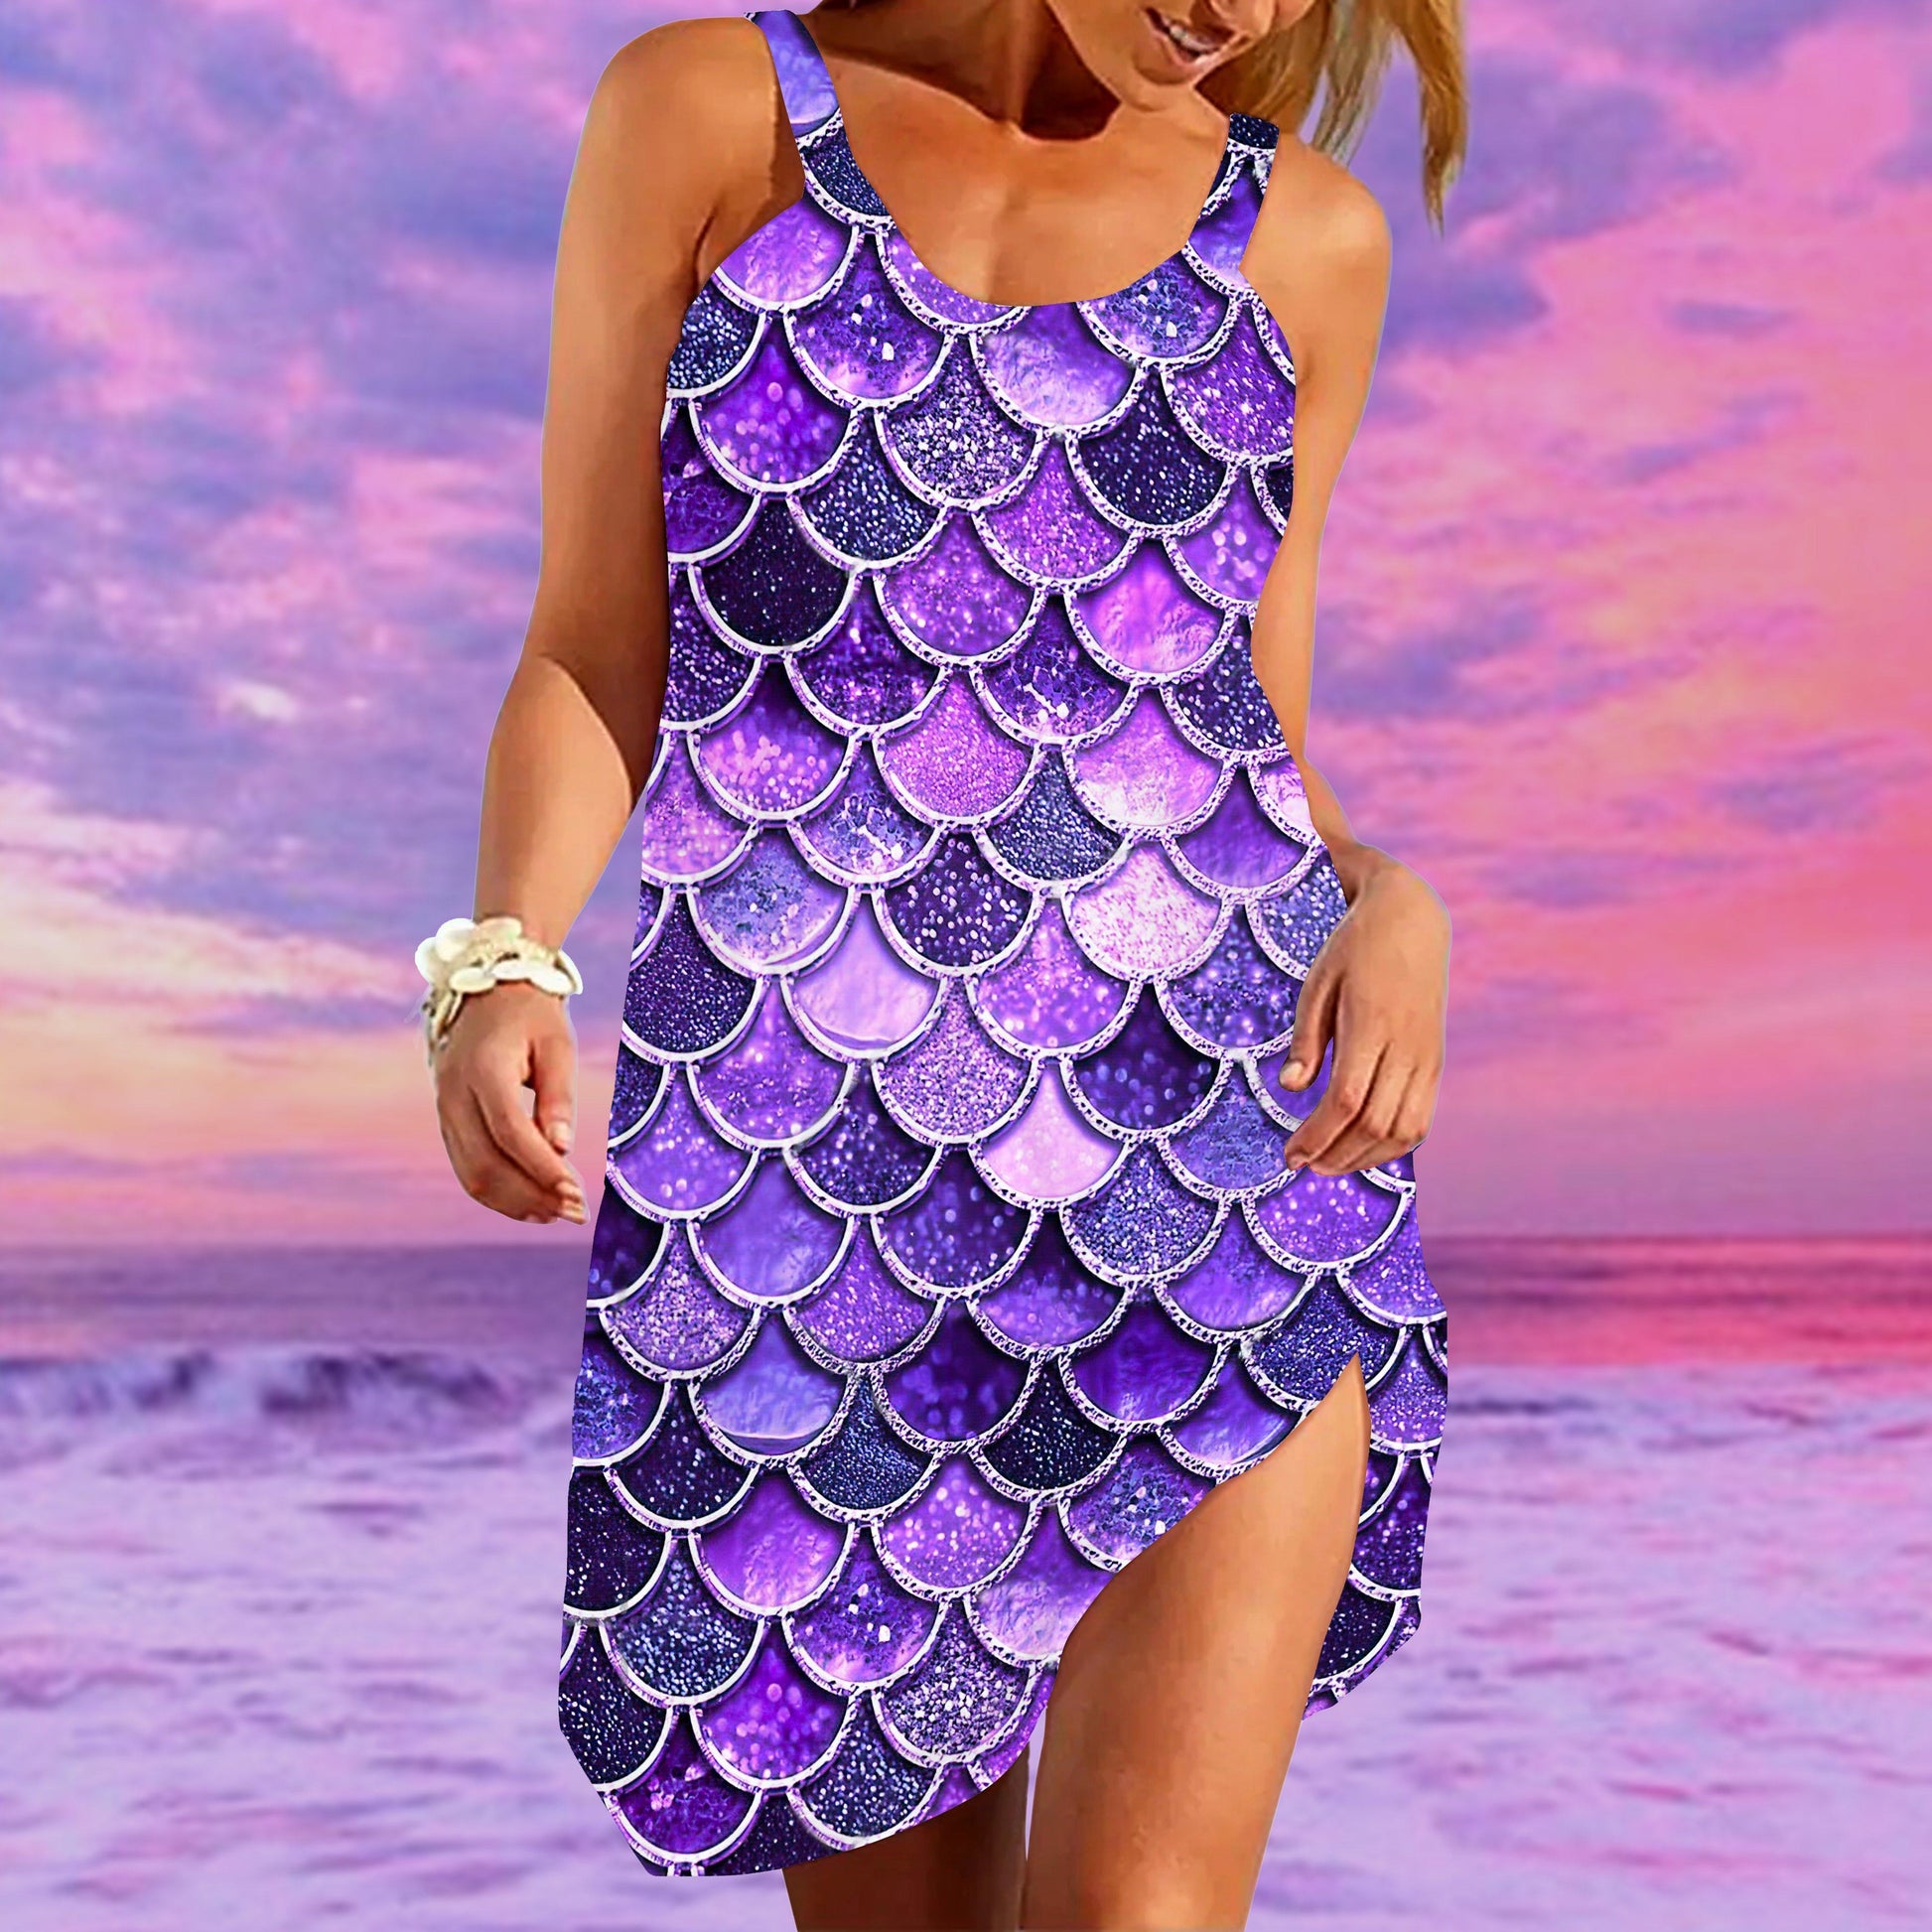 Gearhumans 3D The Most Ultra Violet Sparkle Mermaid Tail In The Ocean Custom Sleeveless Beach Dress GO14062110 Beach Dress 